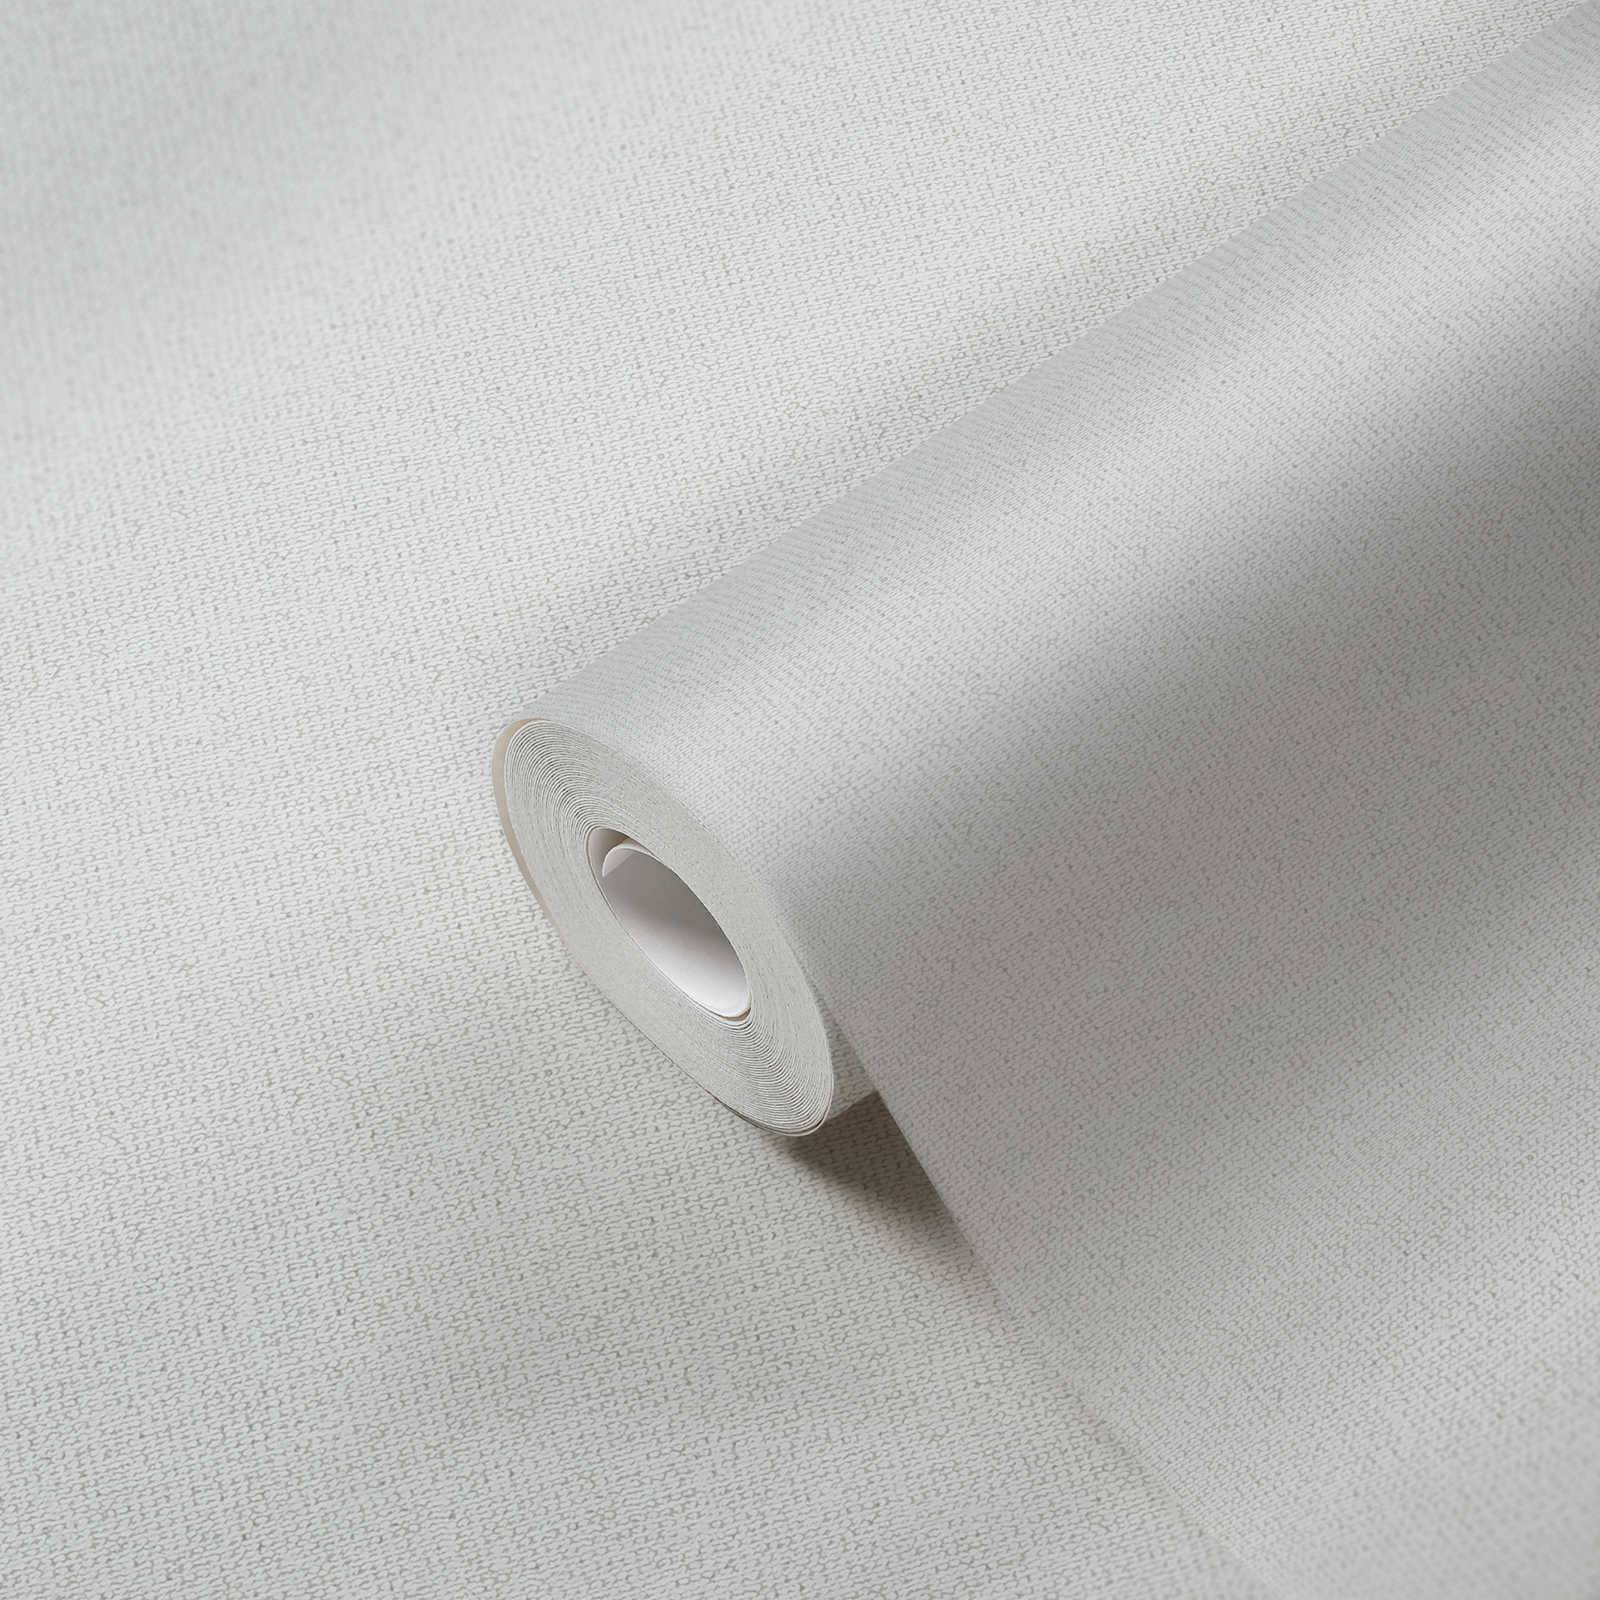             Papel pintado no tejido de aspecto escandinavo y estructura de lino - gris claro
        